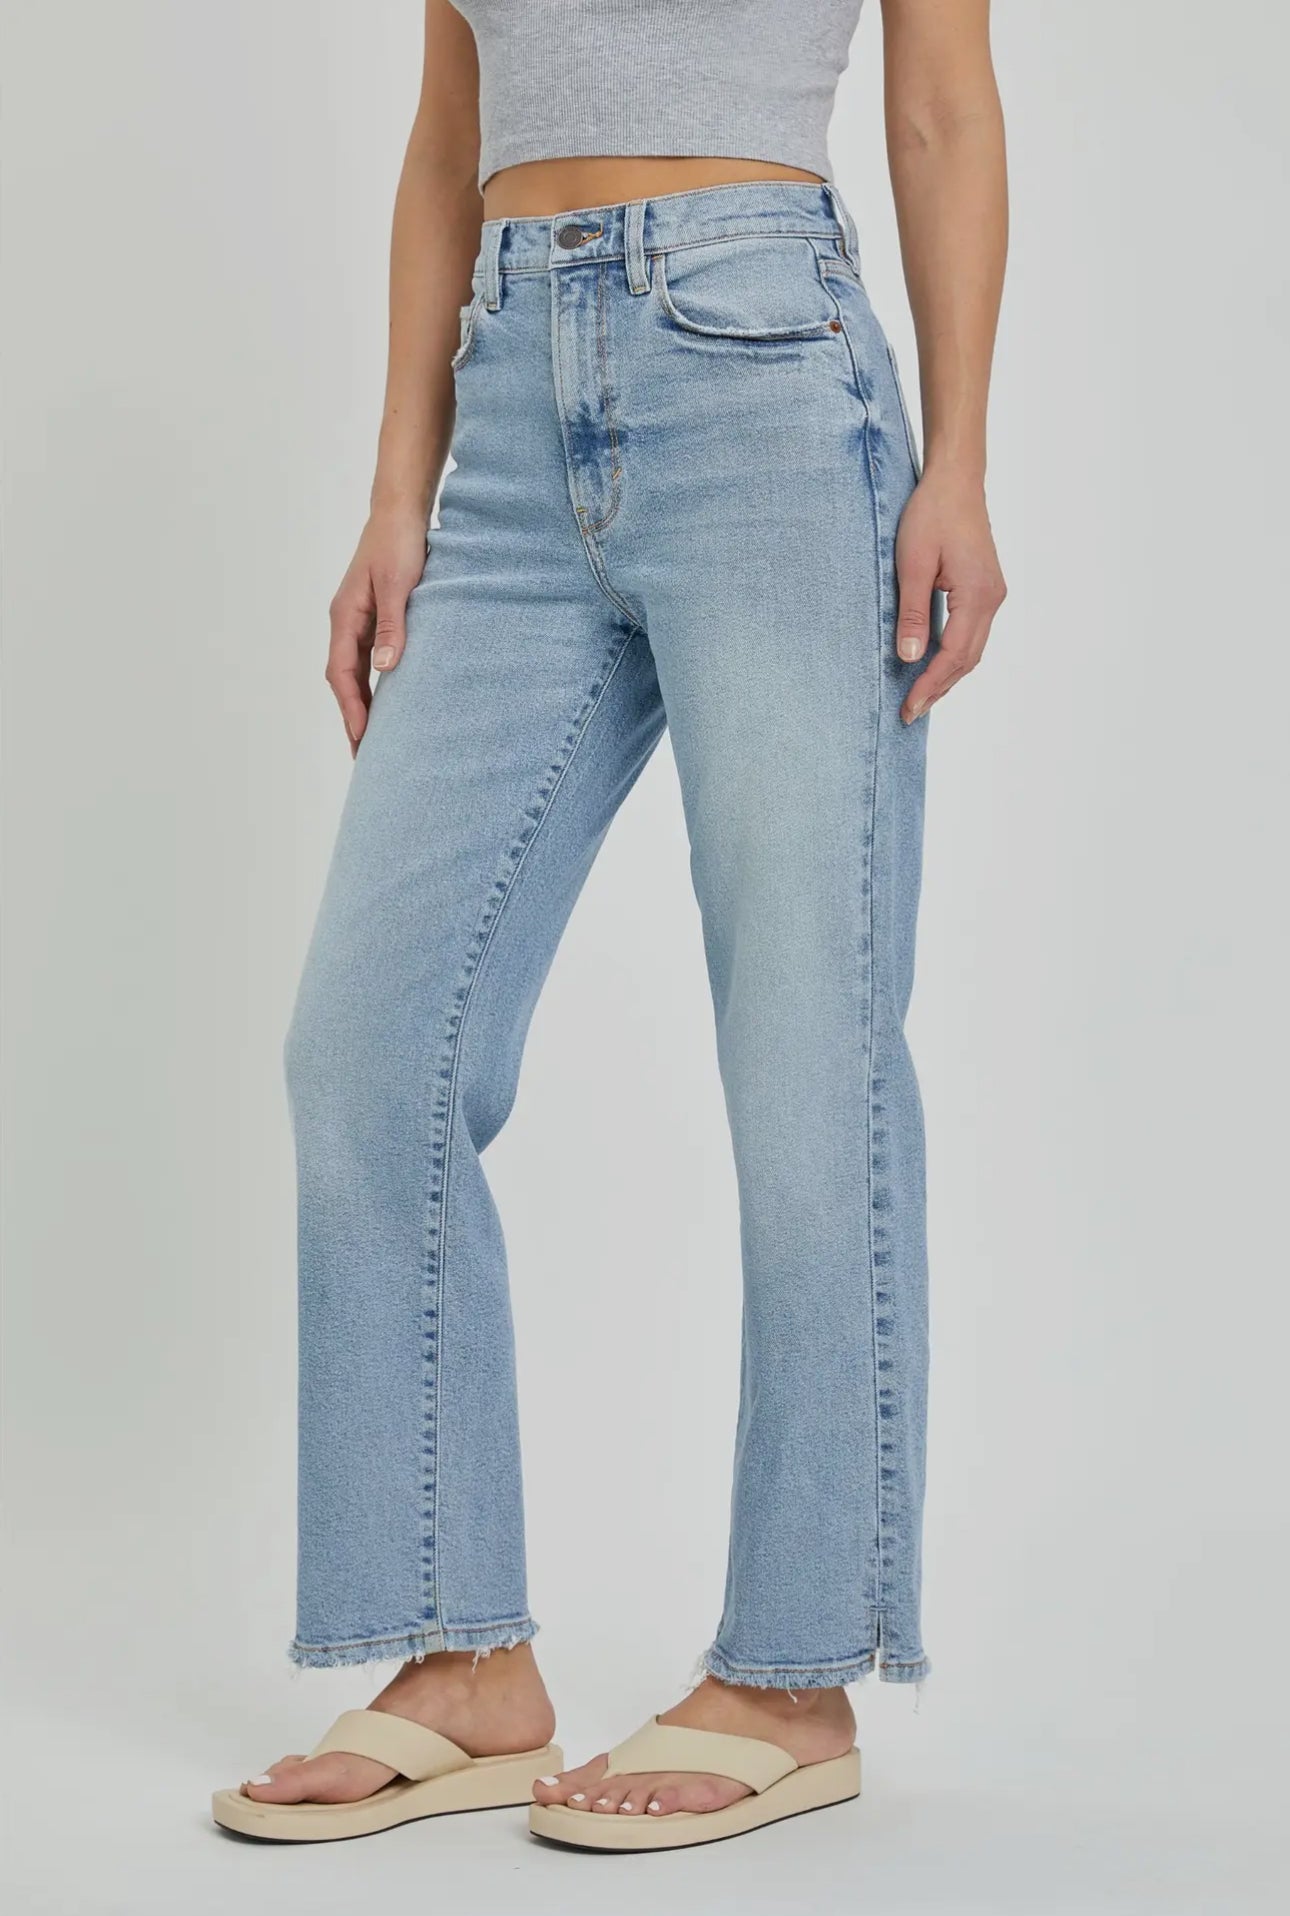 Camri Jeans